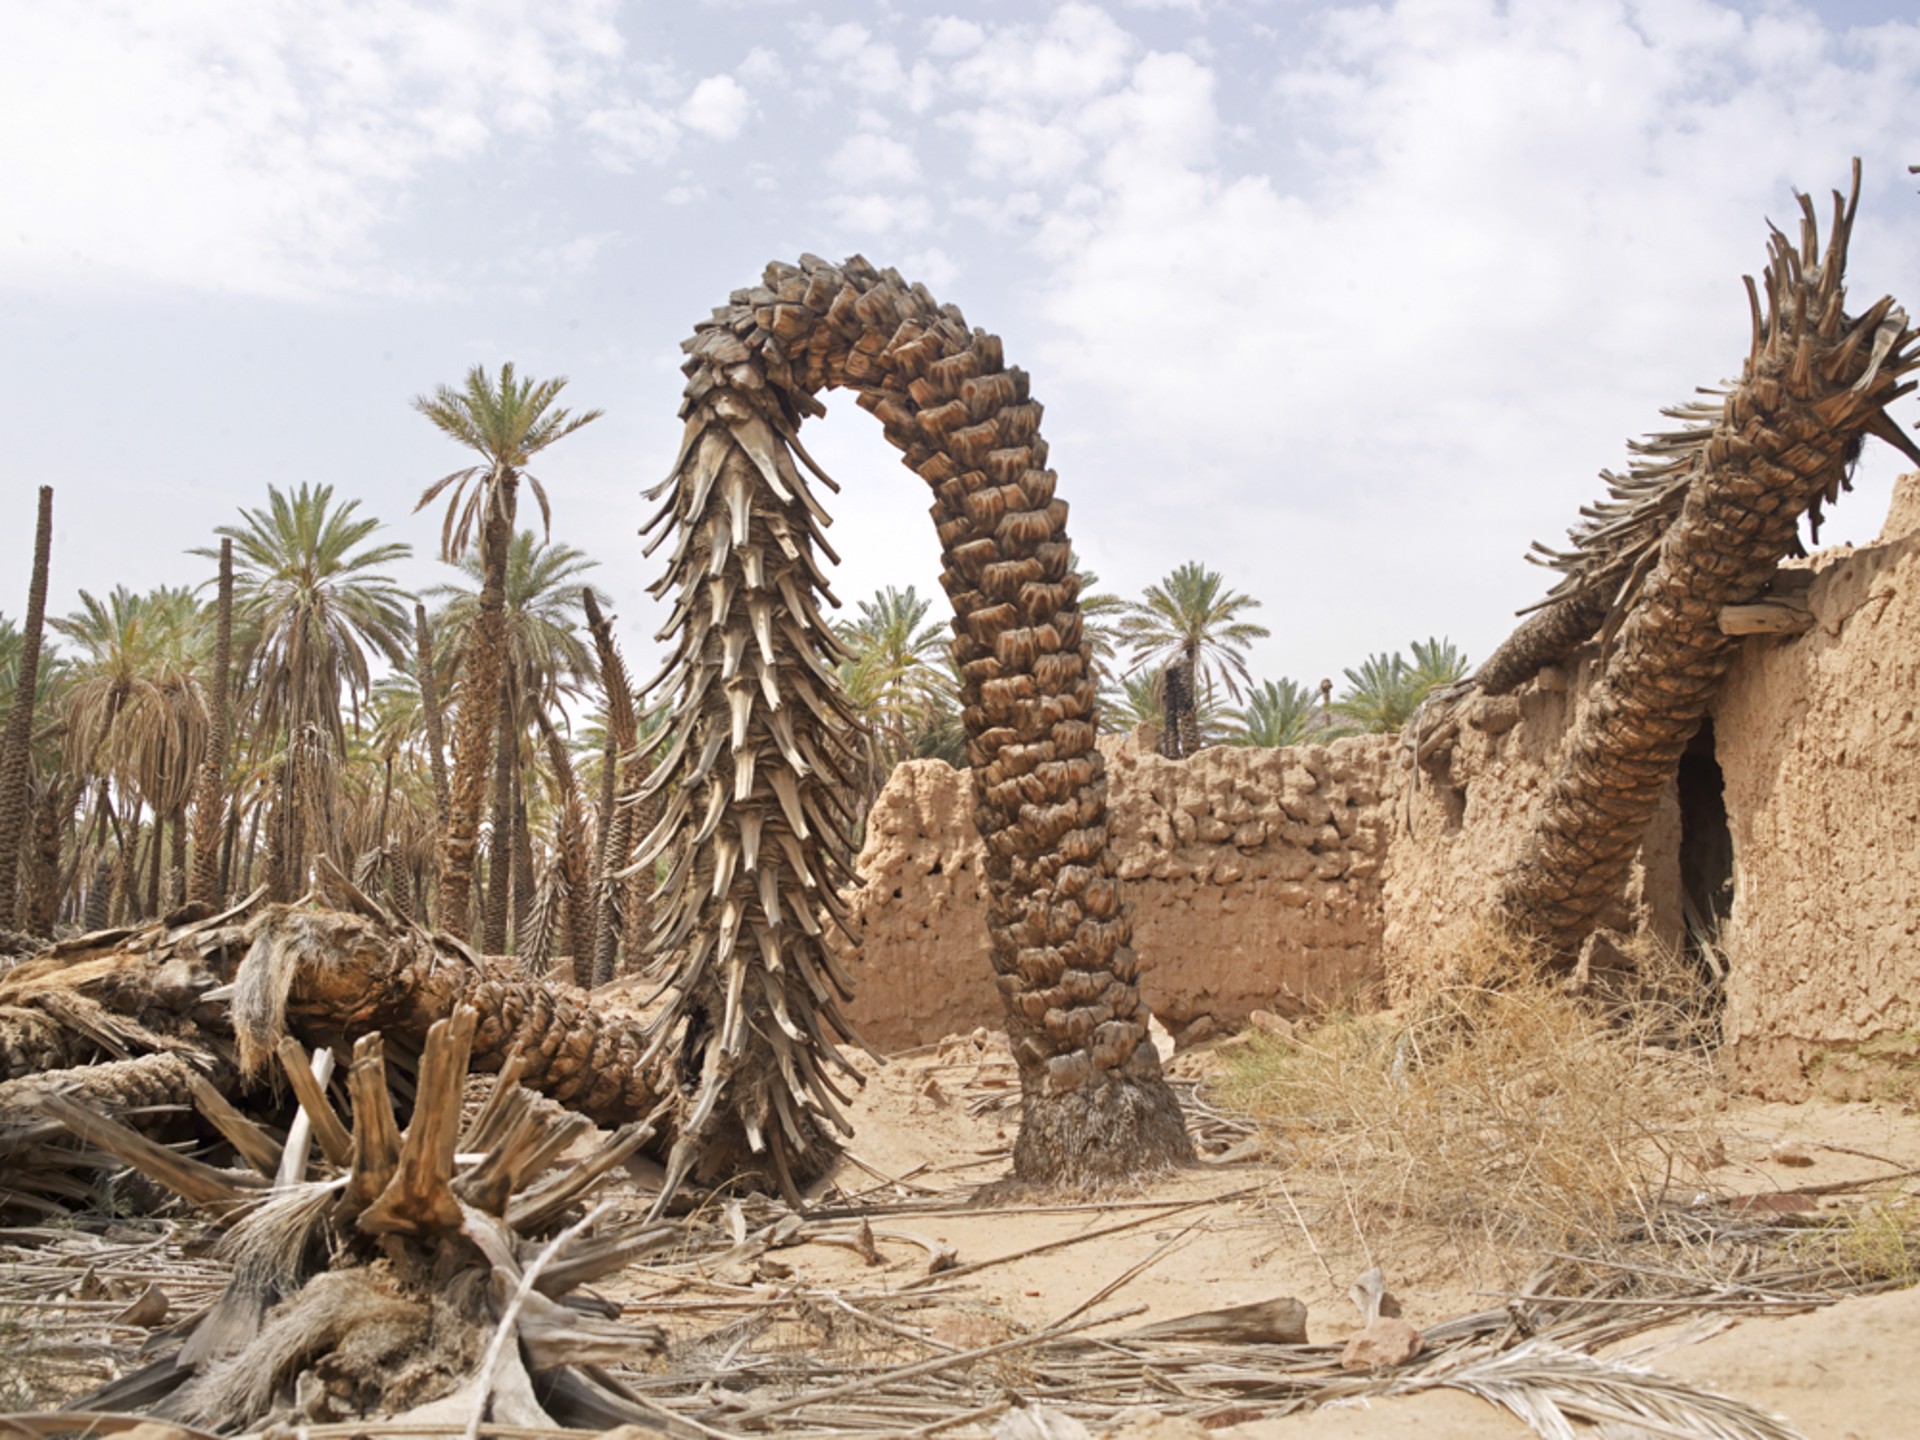 Heritage Palm Groves, Aulula, Saudia Arabia. by Ana Nance